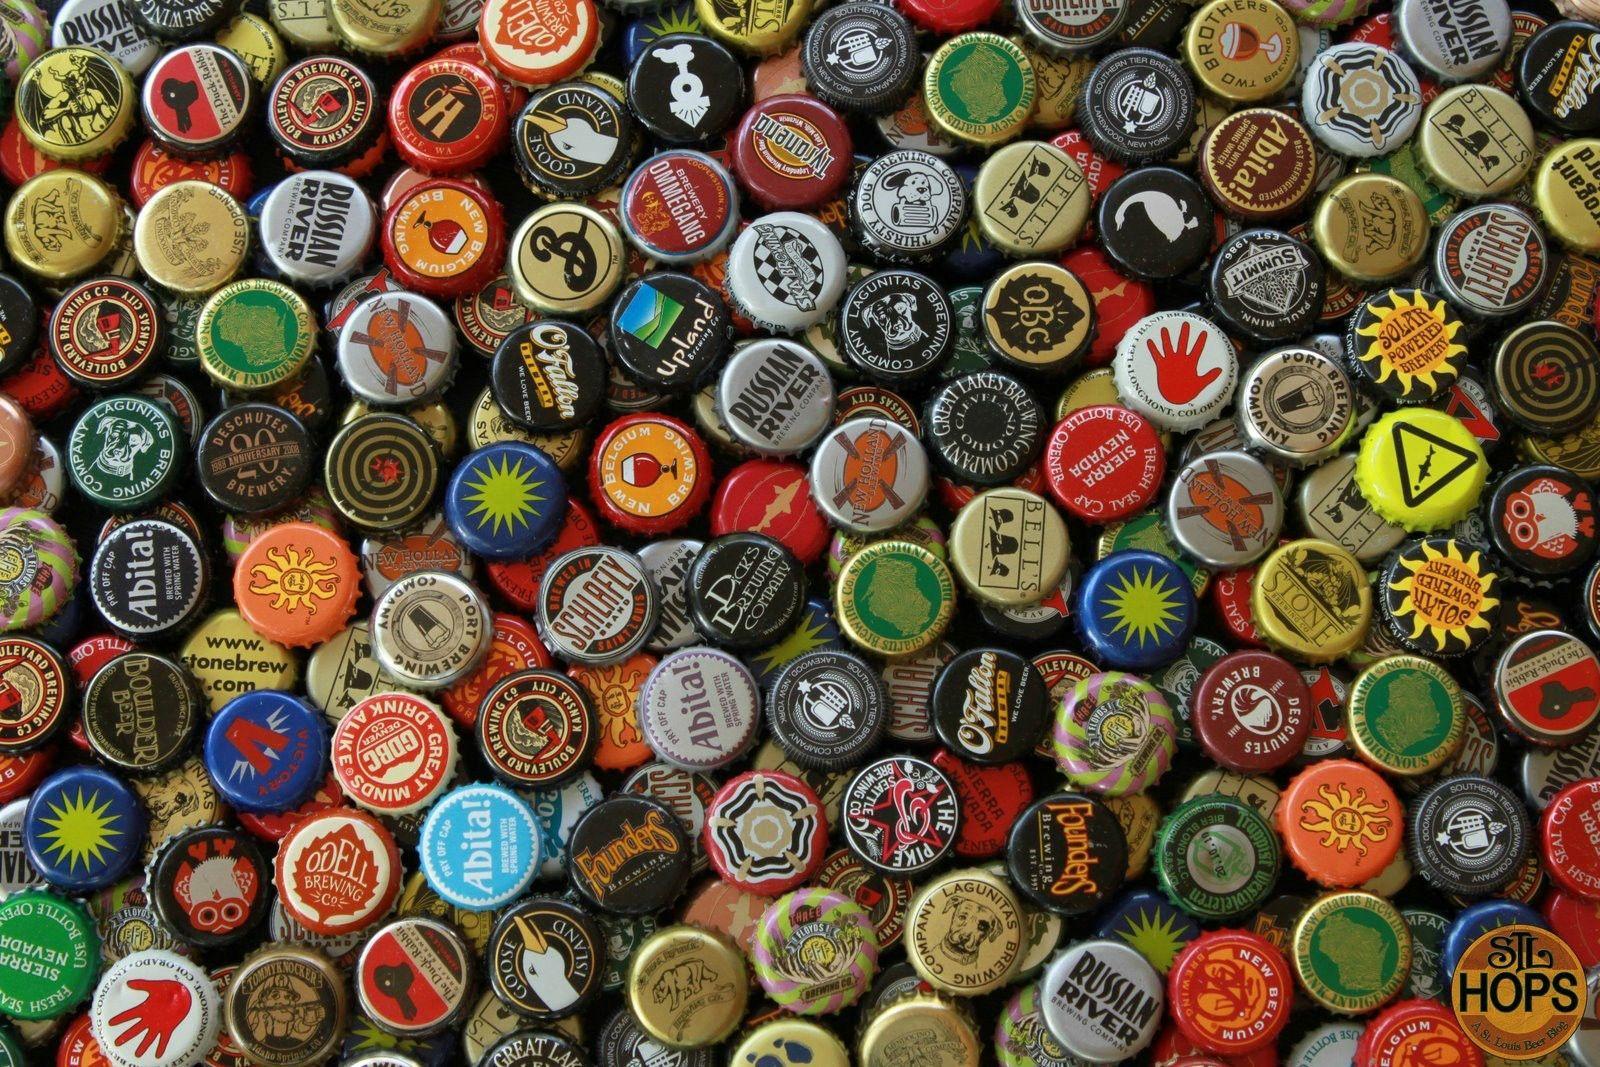 Beer wallpaper. Beer wallpaper, Beer bottle caps, Beer